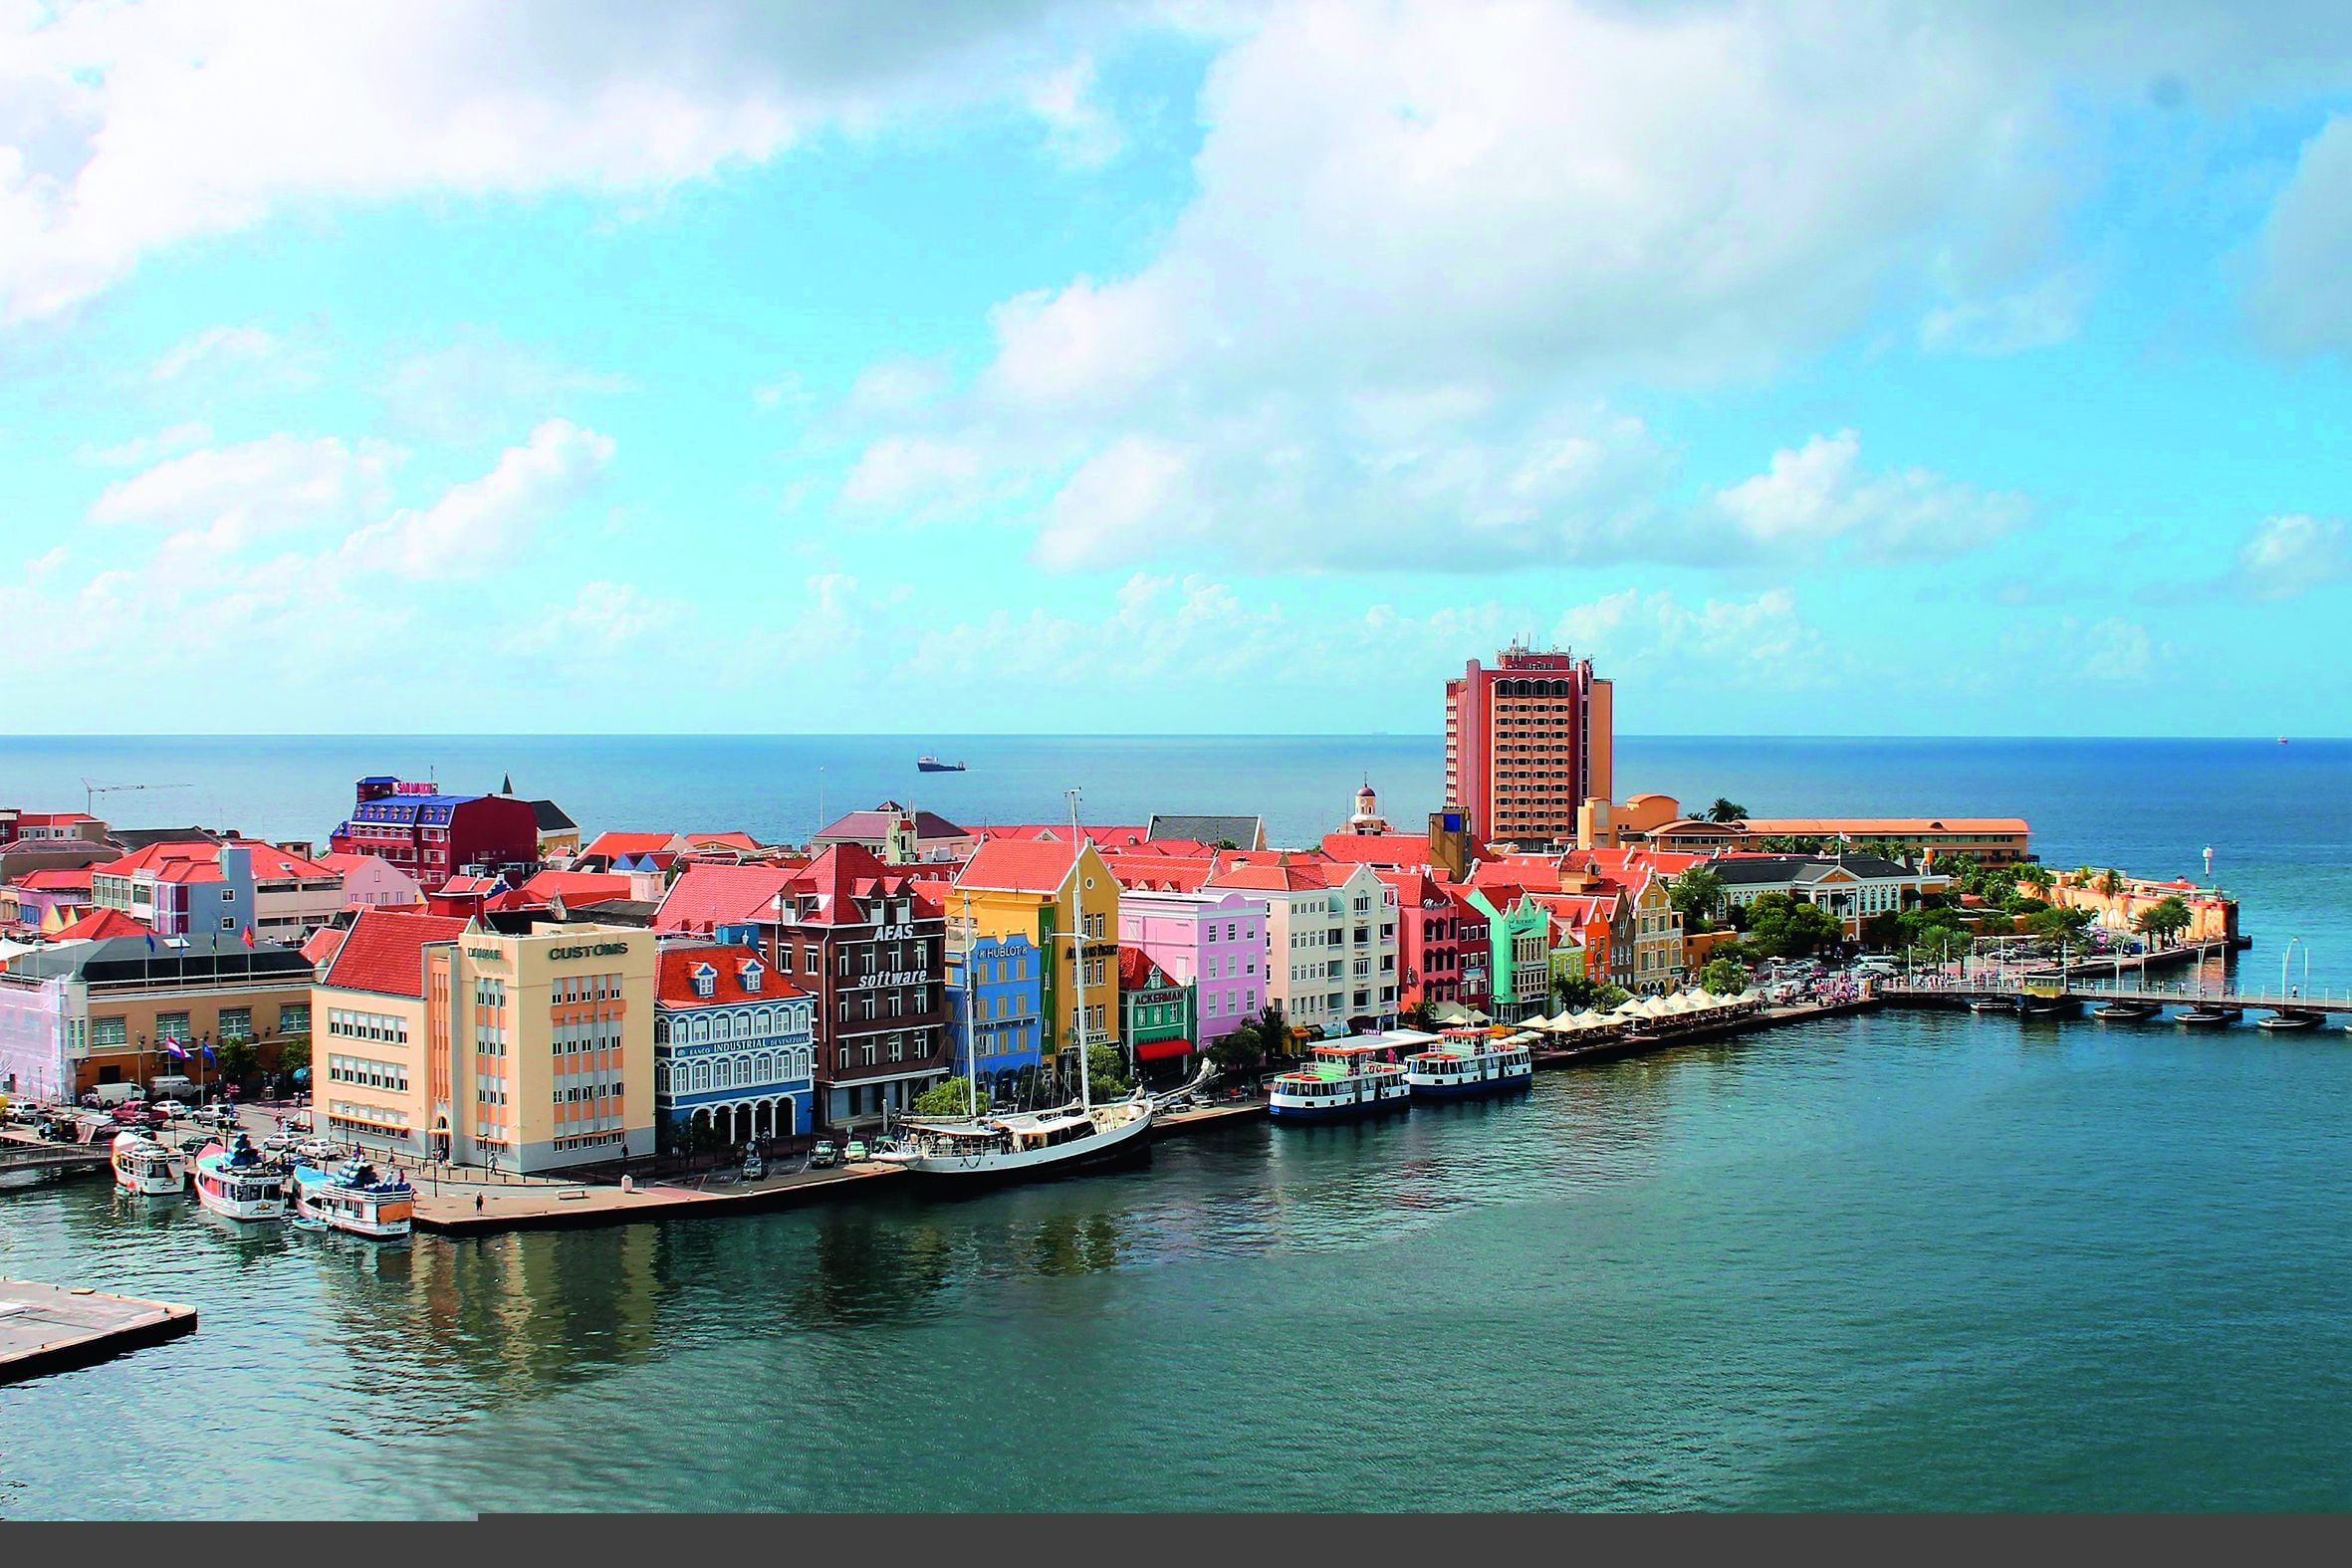 Una parada obligada es Willemstad, la capital de Curazao, que regala una colorida postal al frente del famoso Handelskade. (Foto: Pixabay)